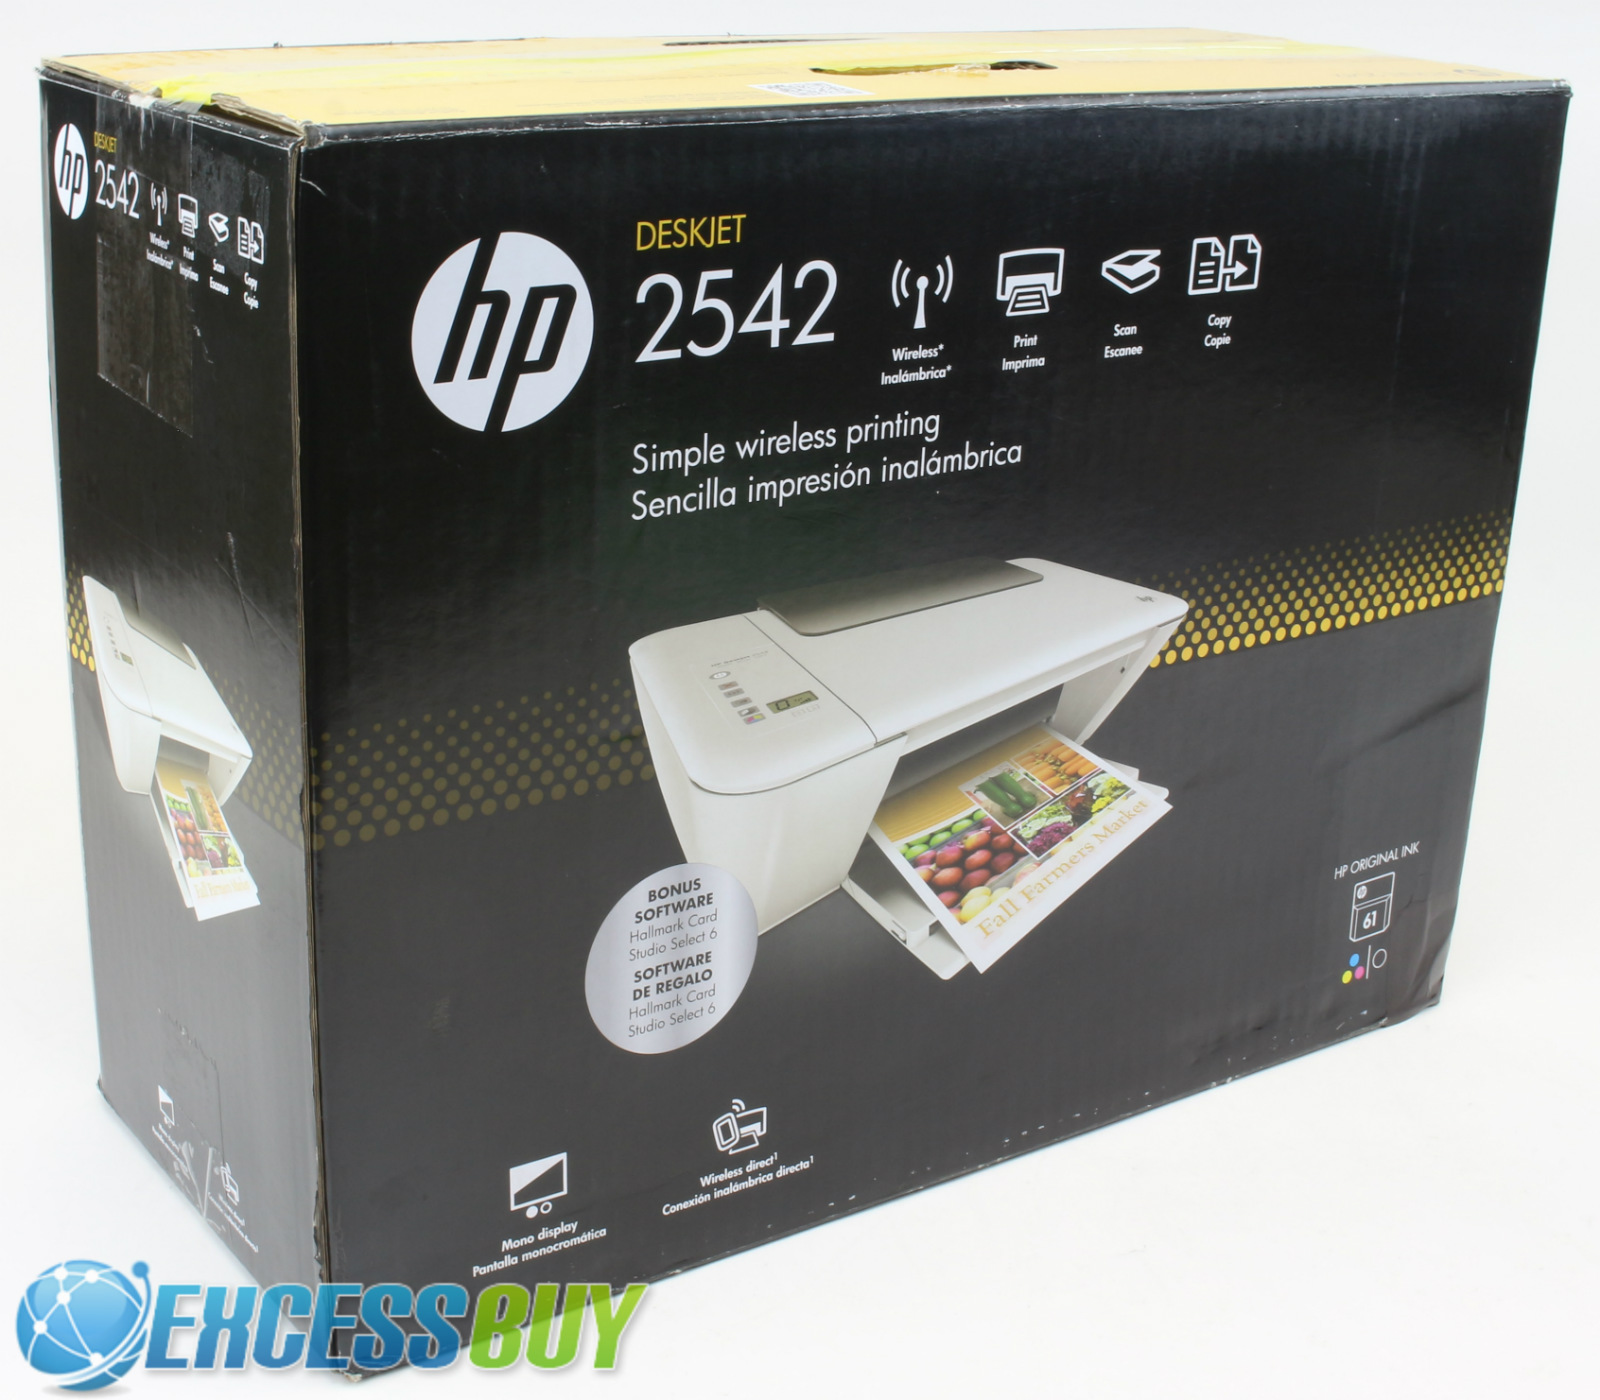 Hp Printer Deskjet 2542 All In One Wireless Eprint Copy Scan Wifi Ebay